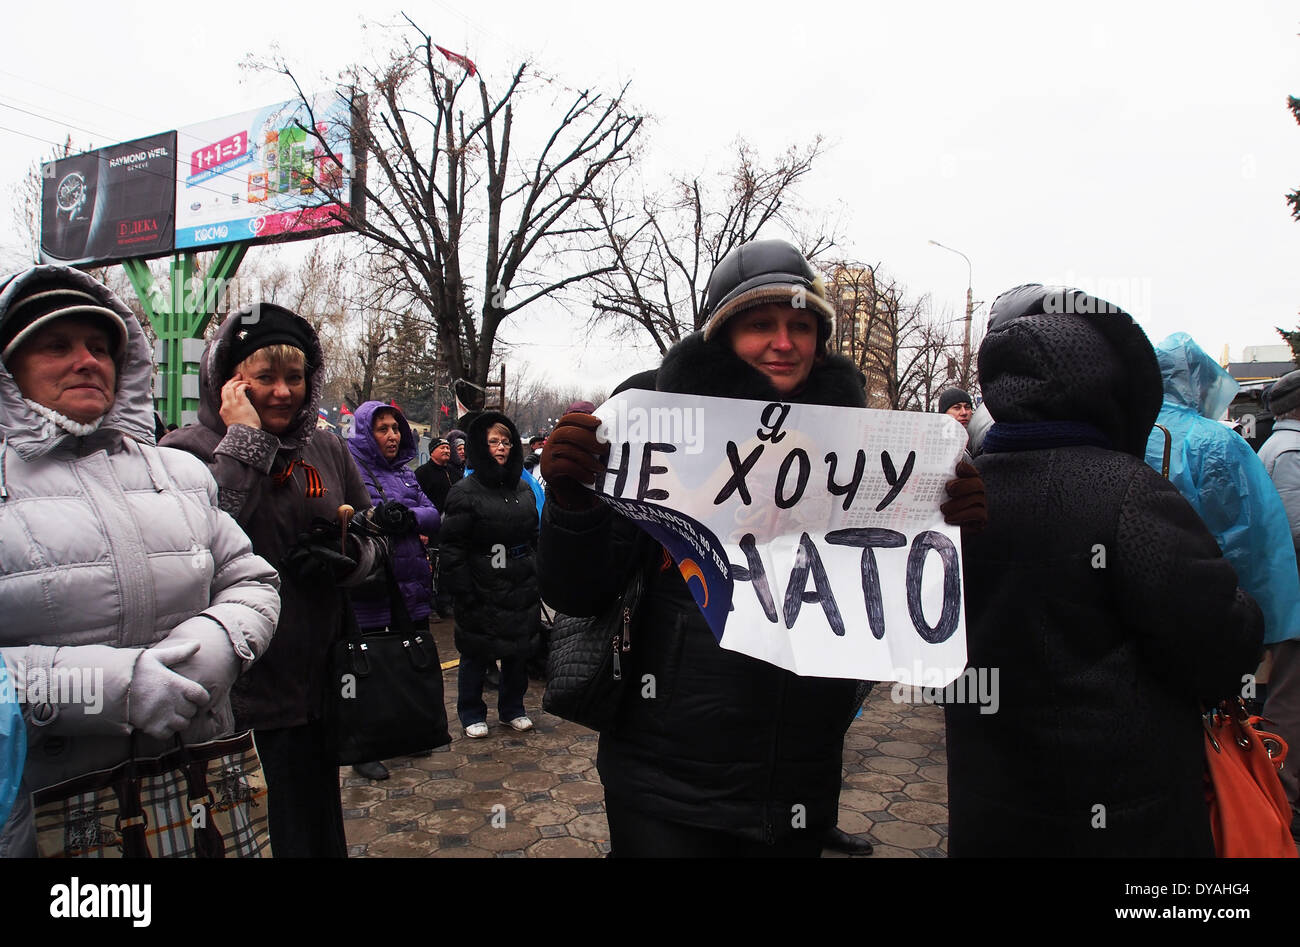 Lugansk, Ukraine. 11. April 2014. eine Frau hält die Hände von selbstgemachten Plakat mit dem Text "Ich will nicht der NATO" in der Nähe des ukrainischen Regionalbüros des Sicherheitsdienstes in Luhansk Credit: Igor Golovnov/Alamy Live News Stockfoto